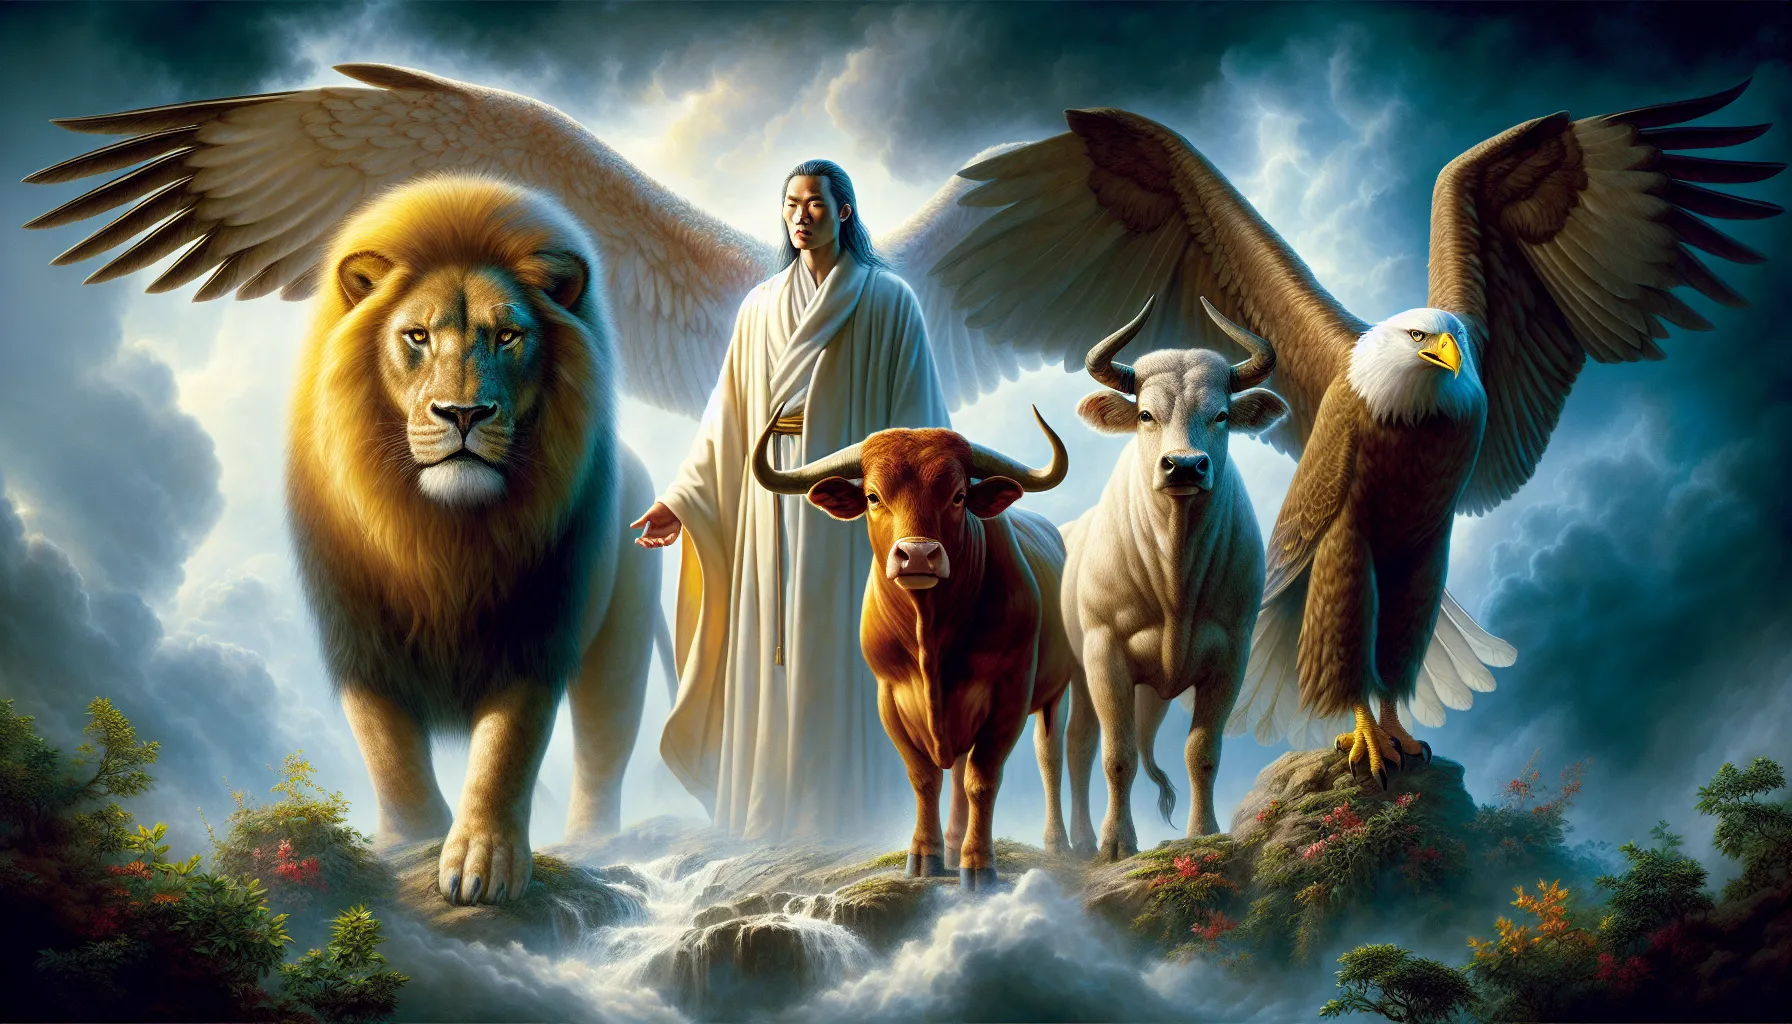 Representación artística de los cuatro seres vivientes del Libro del Apocalipsis: el león, el buey, el hombre y el águila.